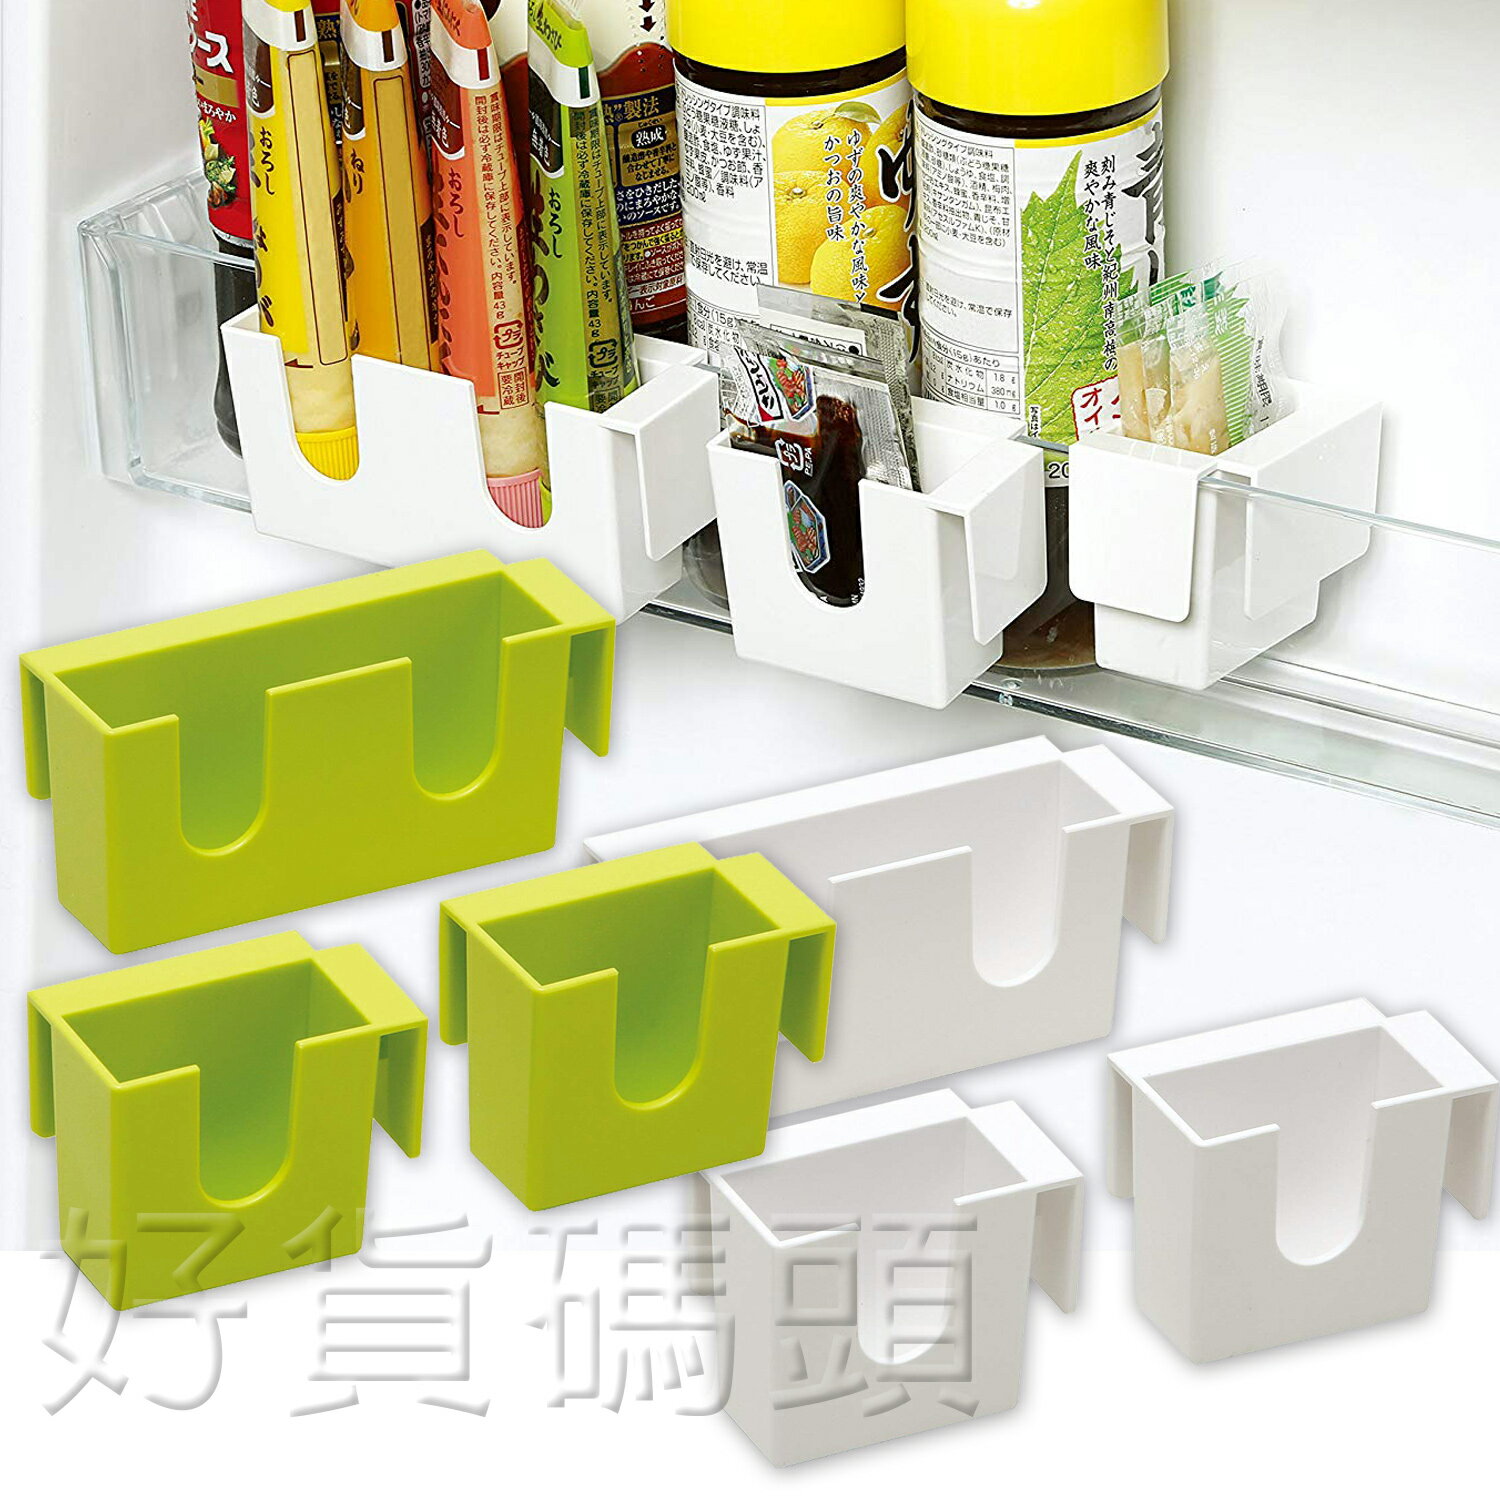 日本製AIWA冰箱小物置架冰箱門內小置物架方便存放掛勾收納居家白綠110301/110318